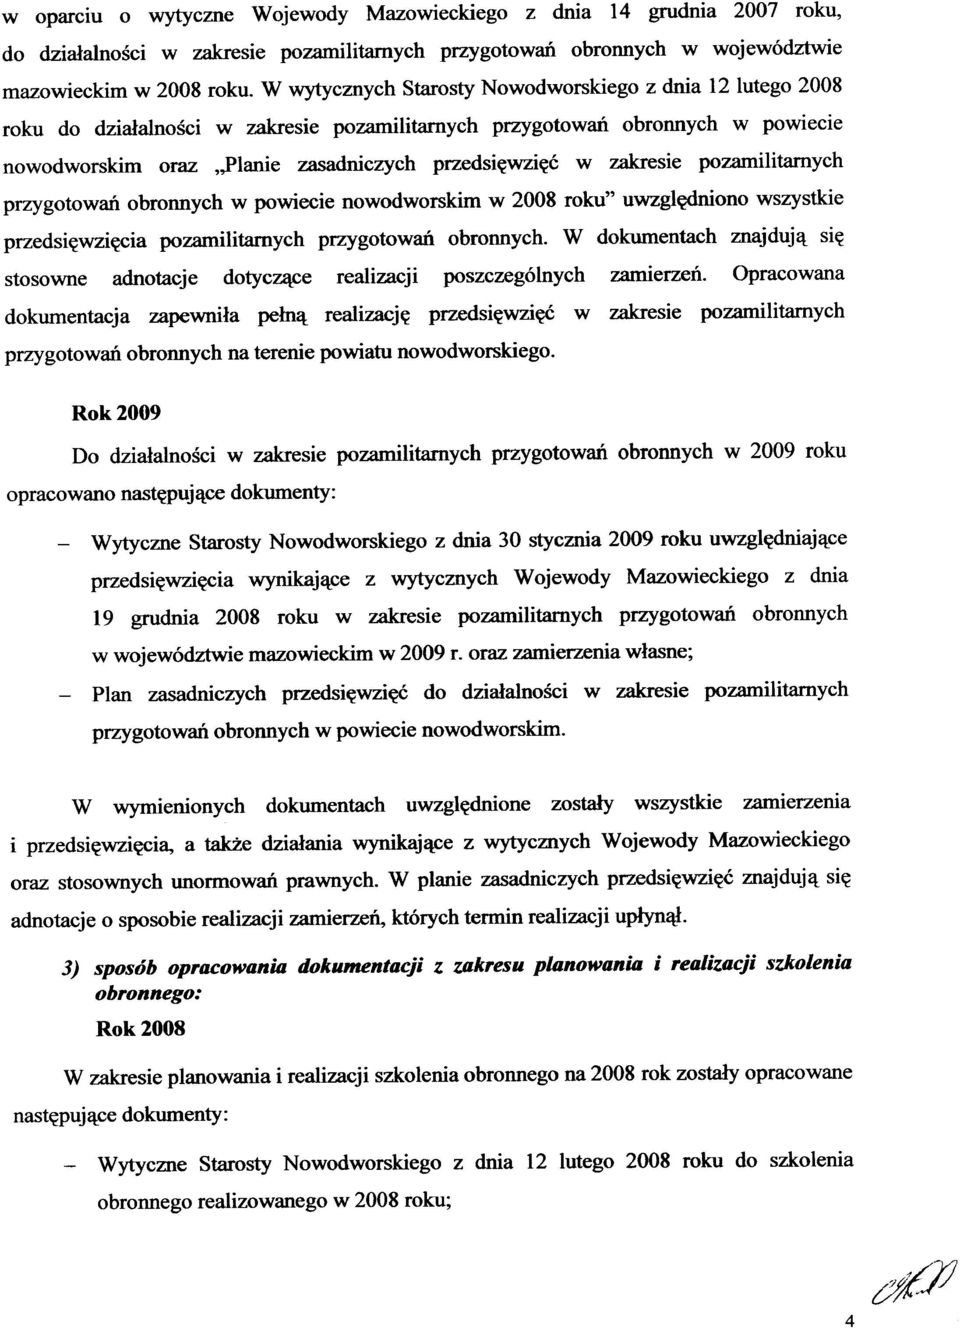 zakresie pozamilitamych przygotowań obronnych w powiecie nowodworskim w 2008 roku" uwzględniono wszystkie przedsięwzięcia pozamilitamych przygotowań obronnych.